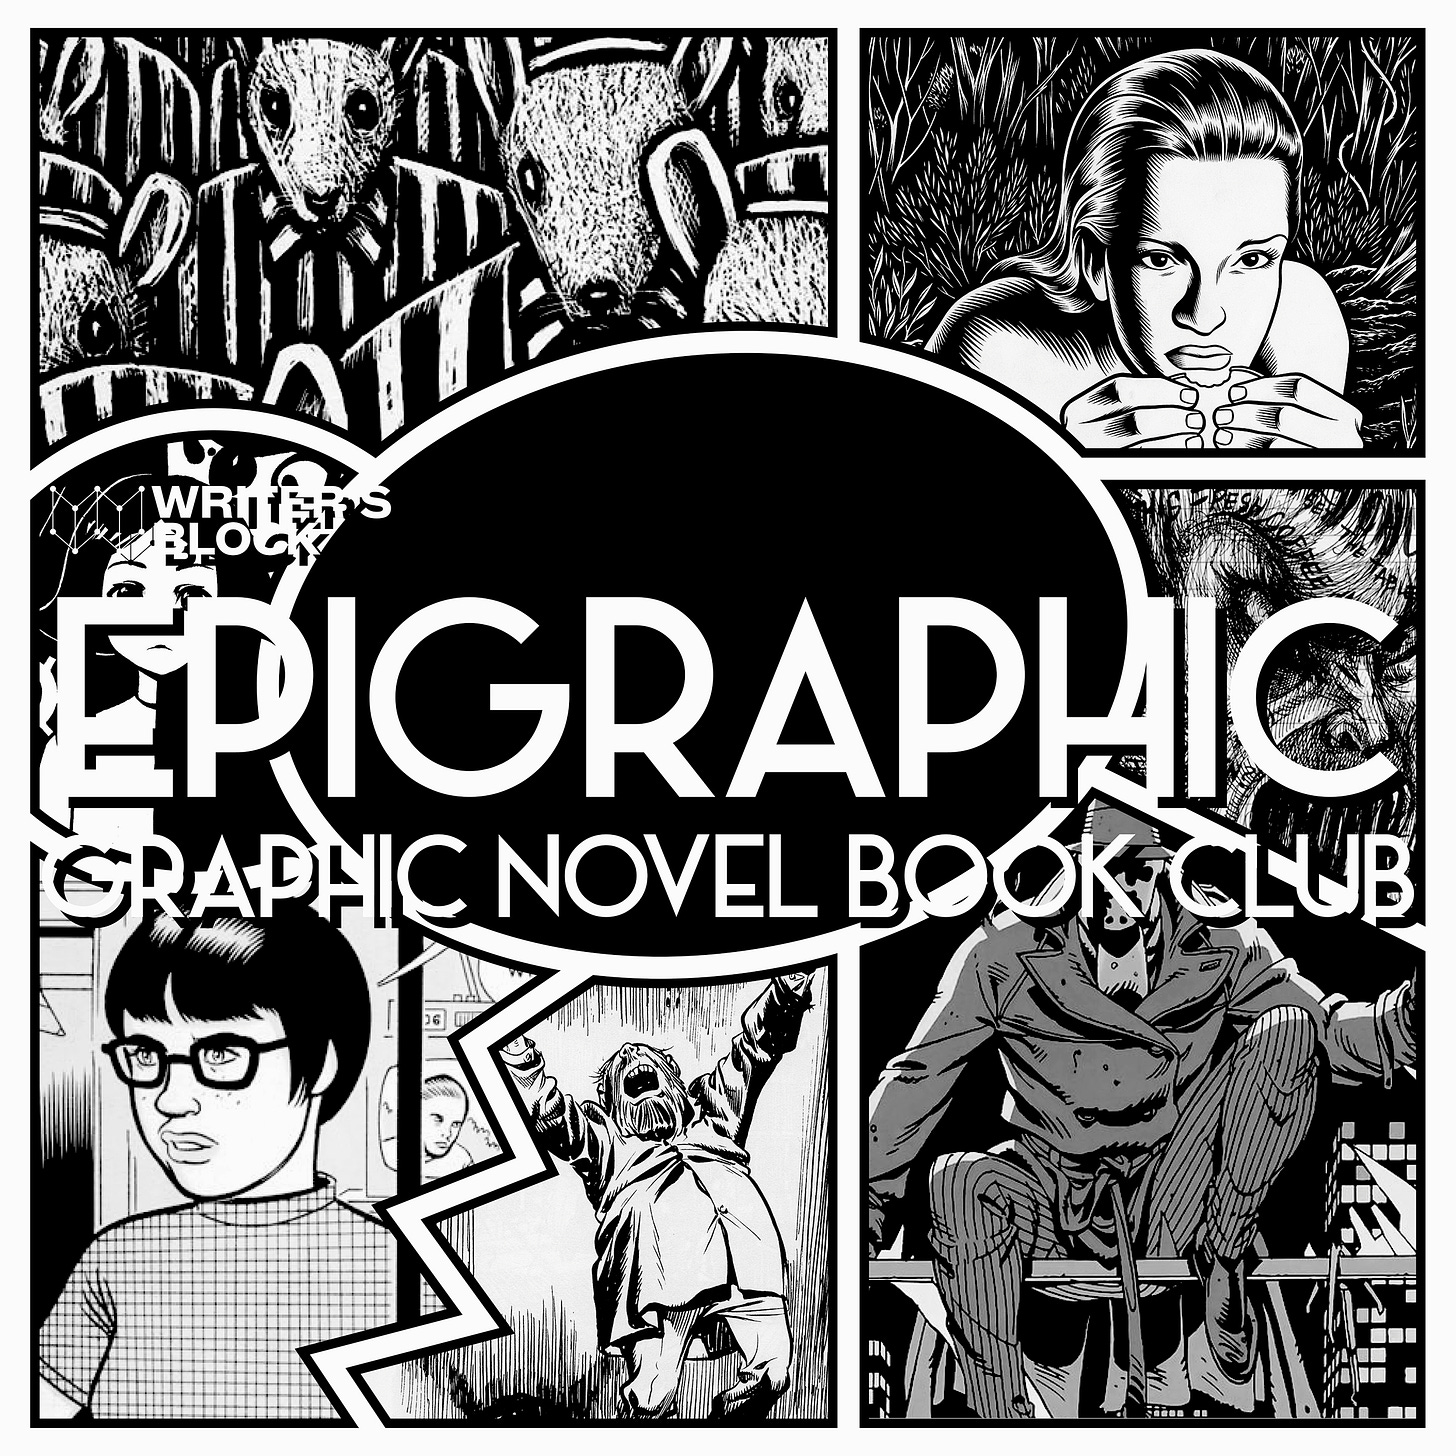 EPIGRAPHIC BOOK CLUB